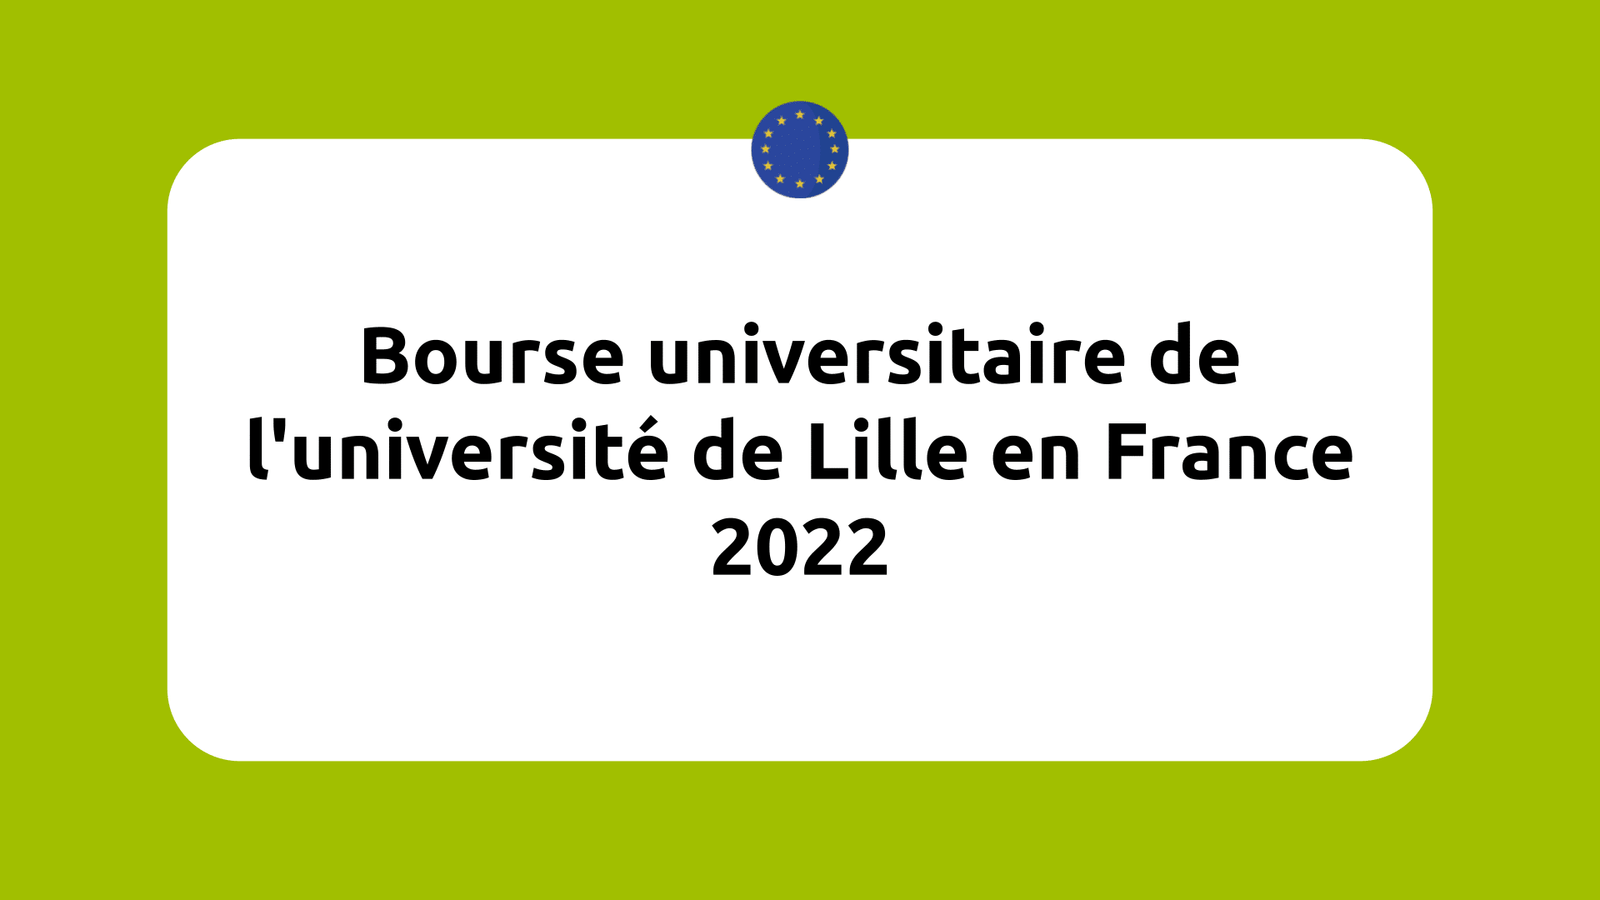 Bourse universitaire de l'université de Lille en France 2022